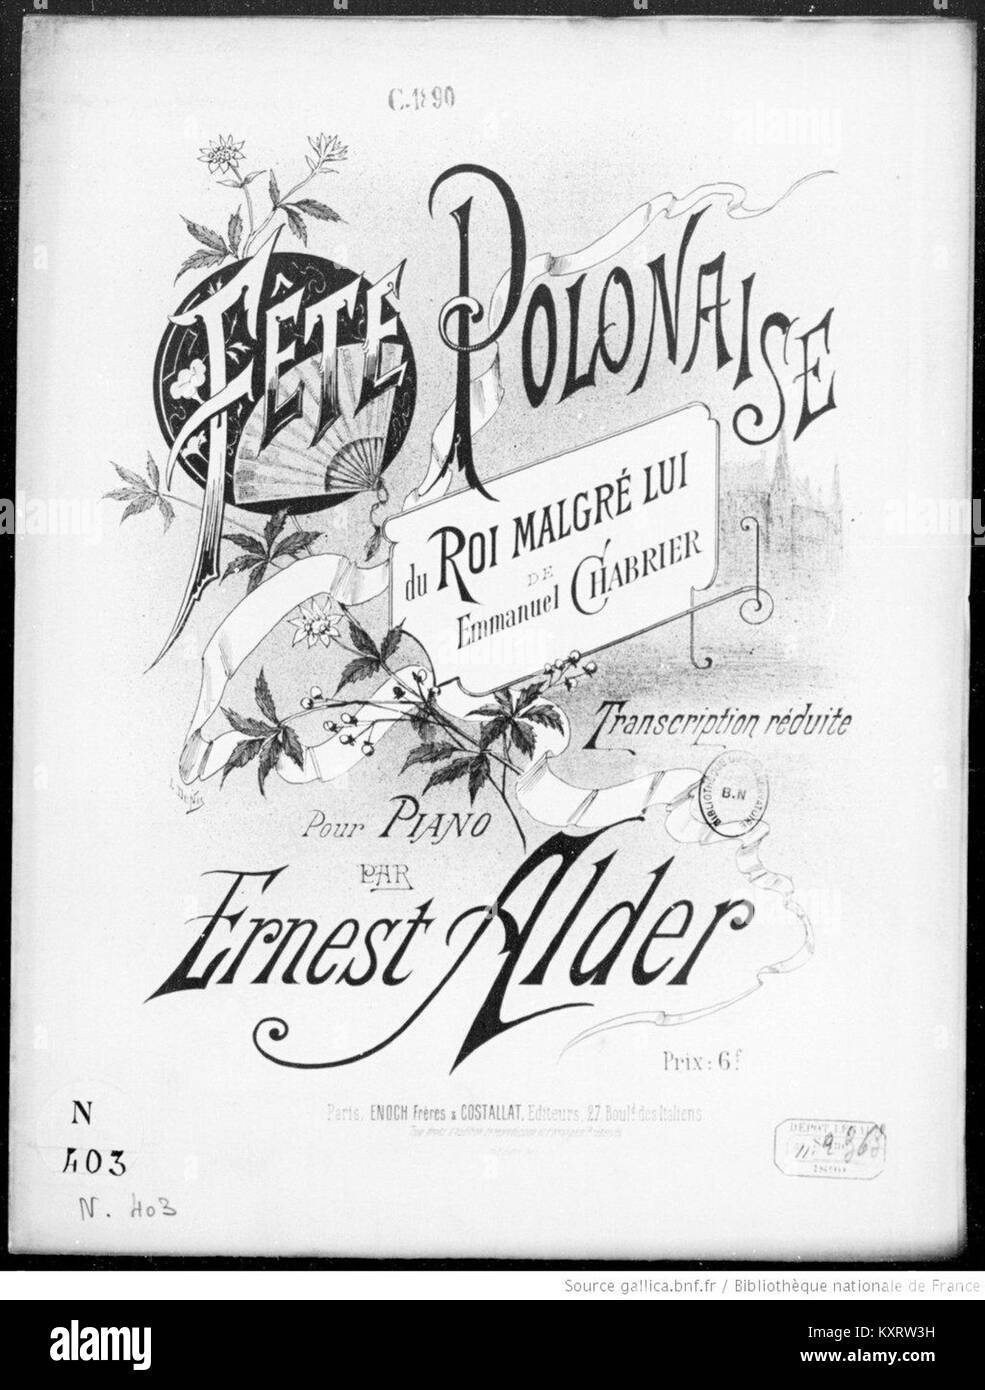 Cover of transcription of Fête polonaise du Roi malgré lui de Emmanuel Chabrier by Ernest Alder illustration by Louis Denis Stock Photo